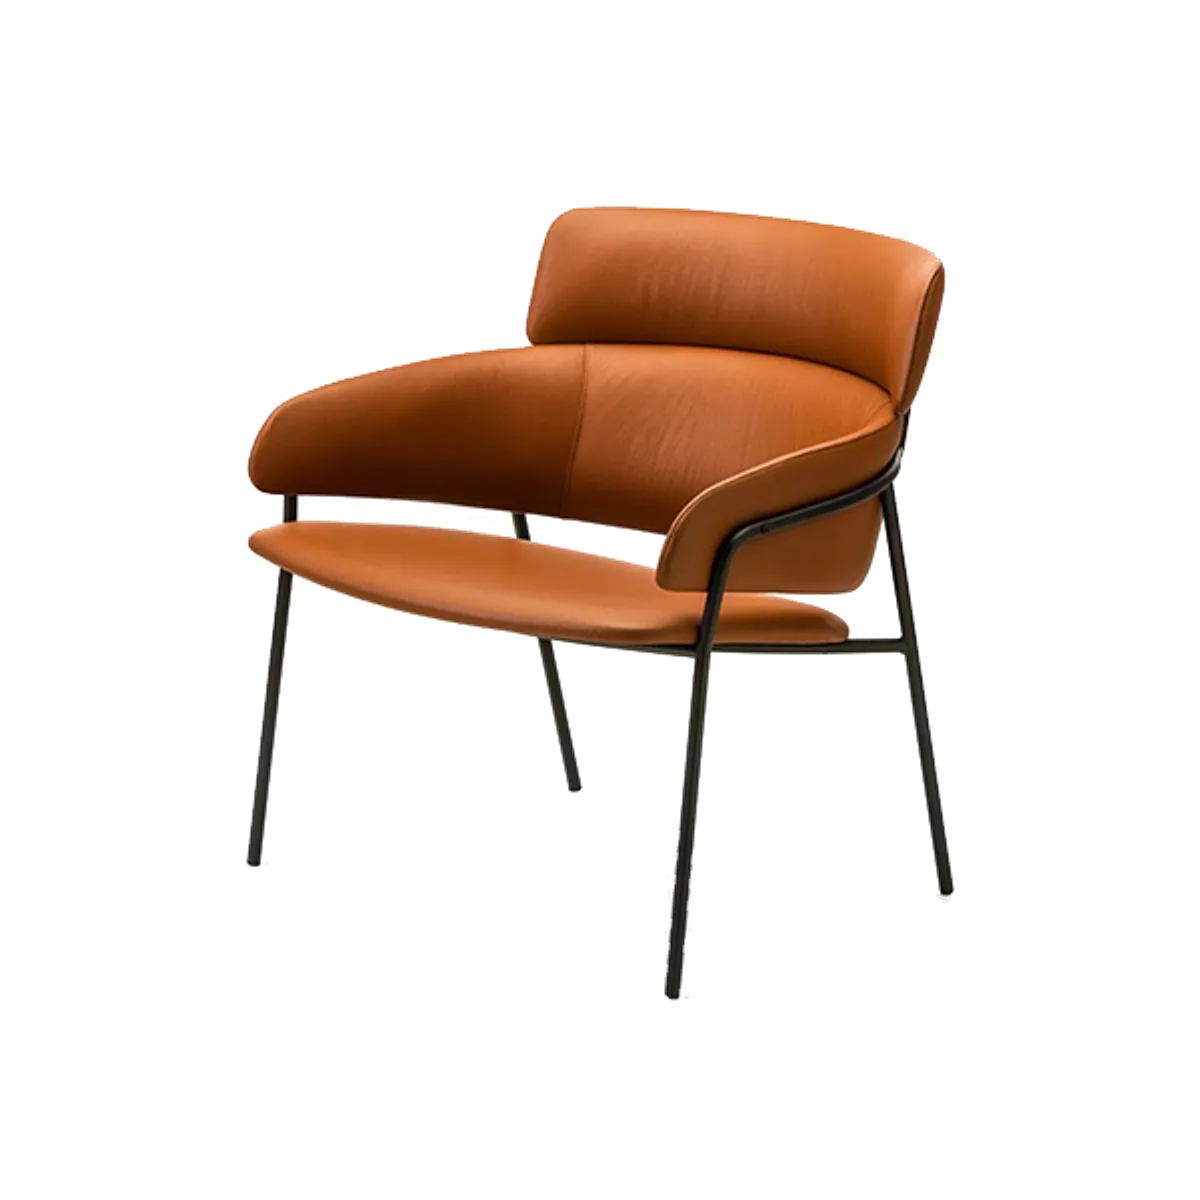 Web Portobello Lounge Chair In Tan Leather